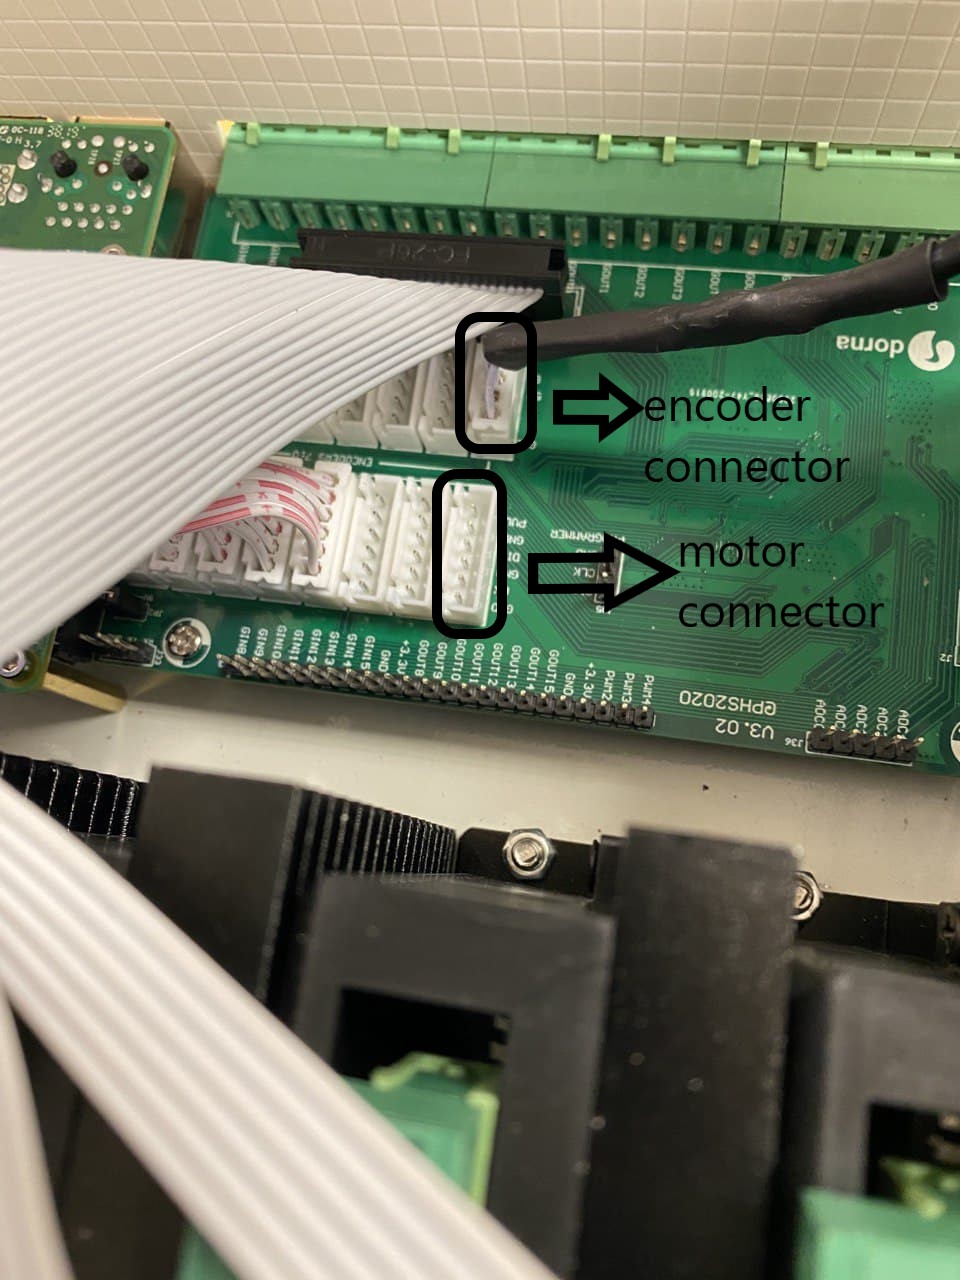 Encoder connector